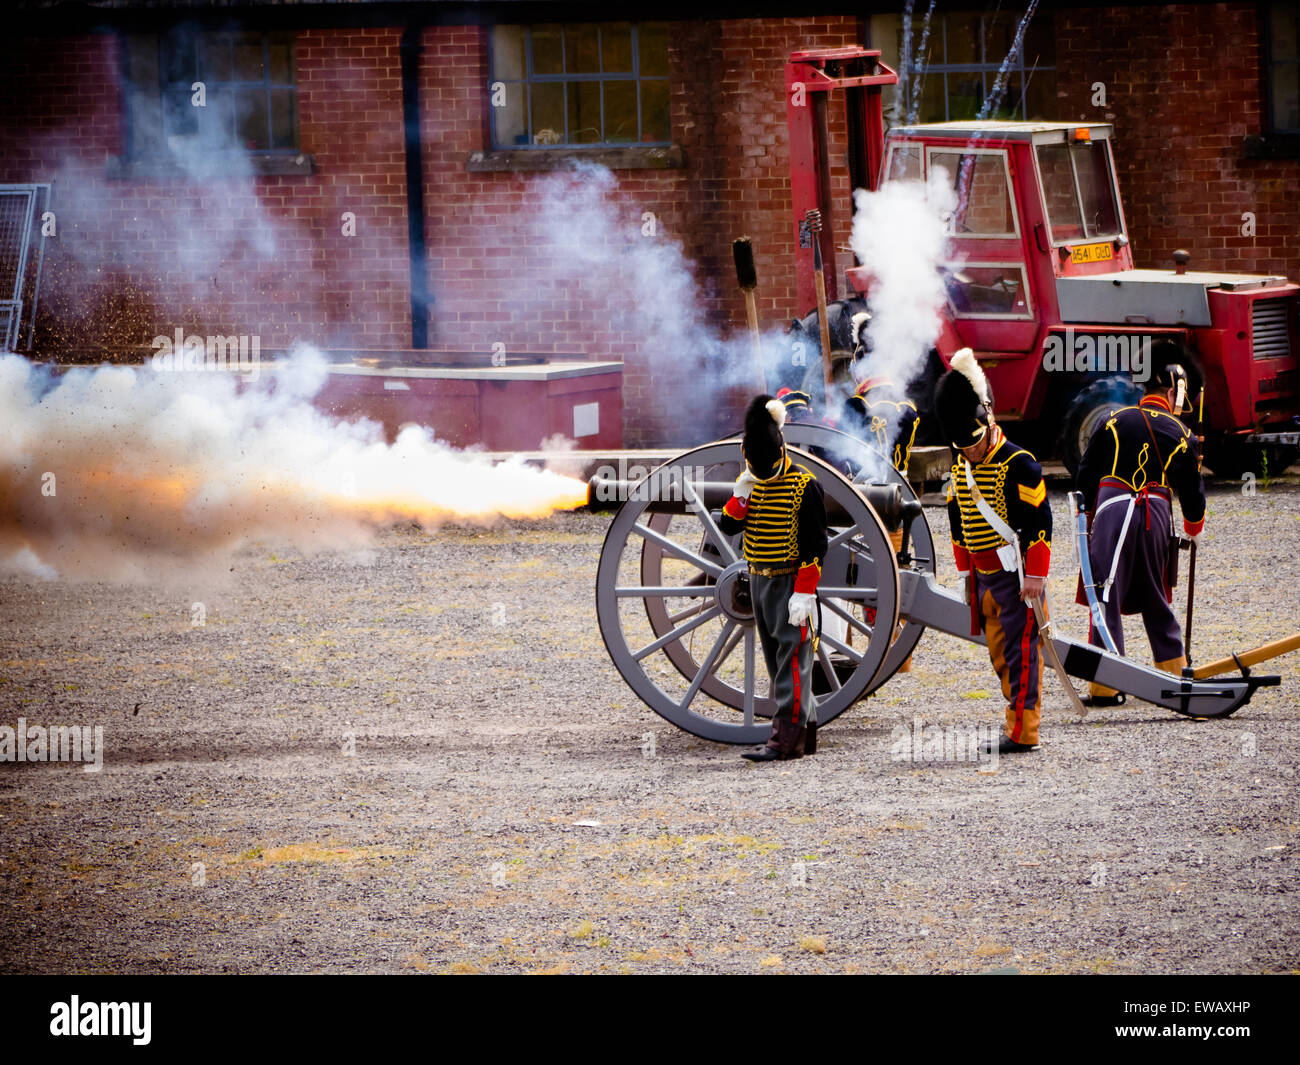 Storici reenattori che sparano autentici cannoni dell'epoca napoleonica al Royal Armouries Museum, Fort Nelson, Portsmouth Foto Stock